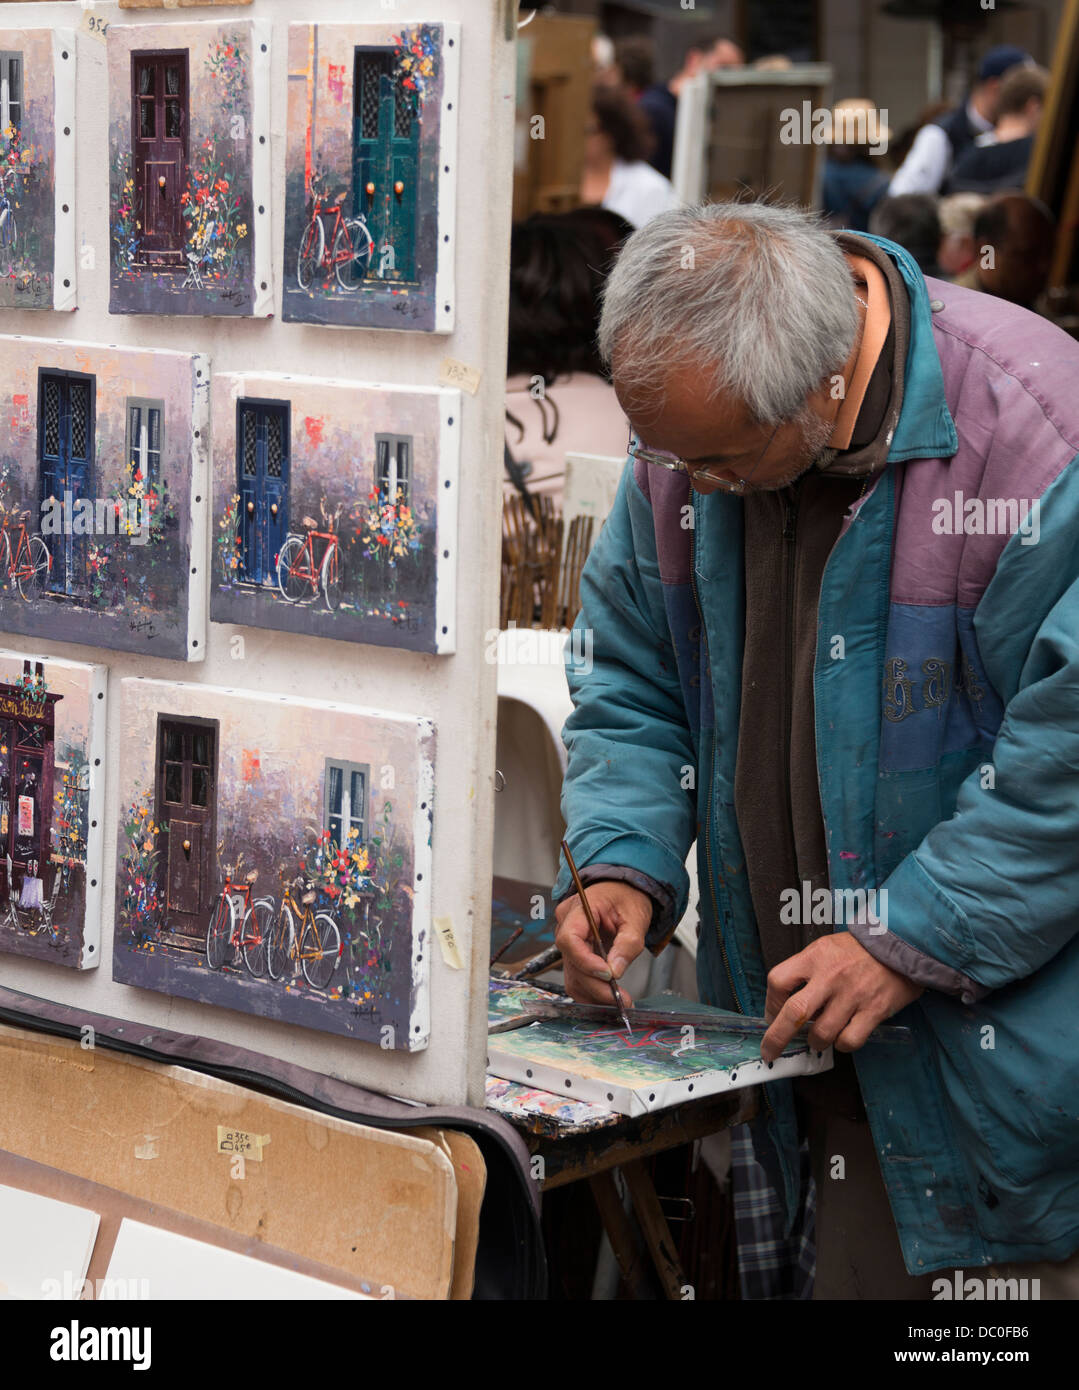 Artist painting in Montmartre's famous Place du Tertre, Paris Stock Photo